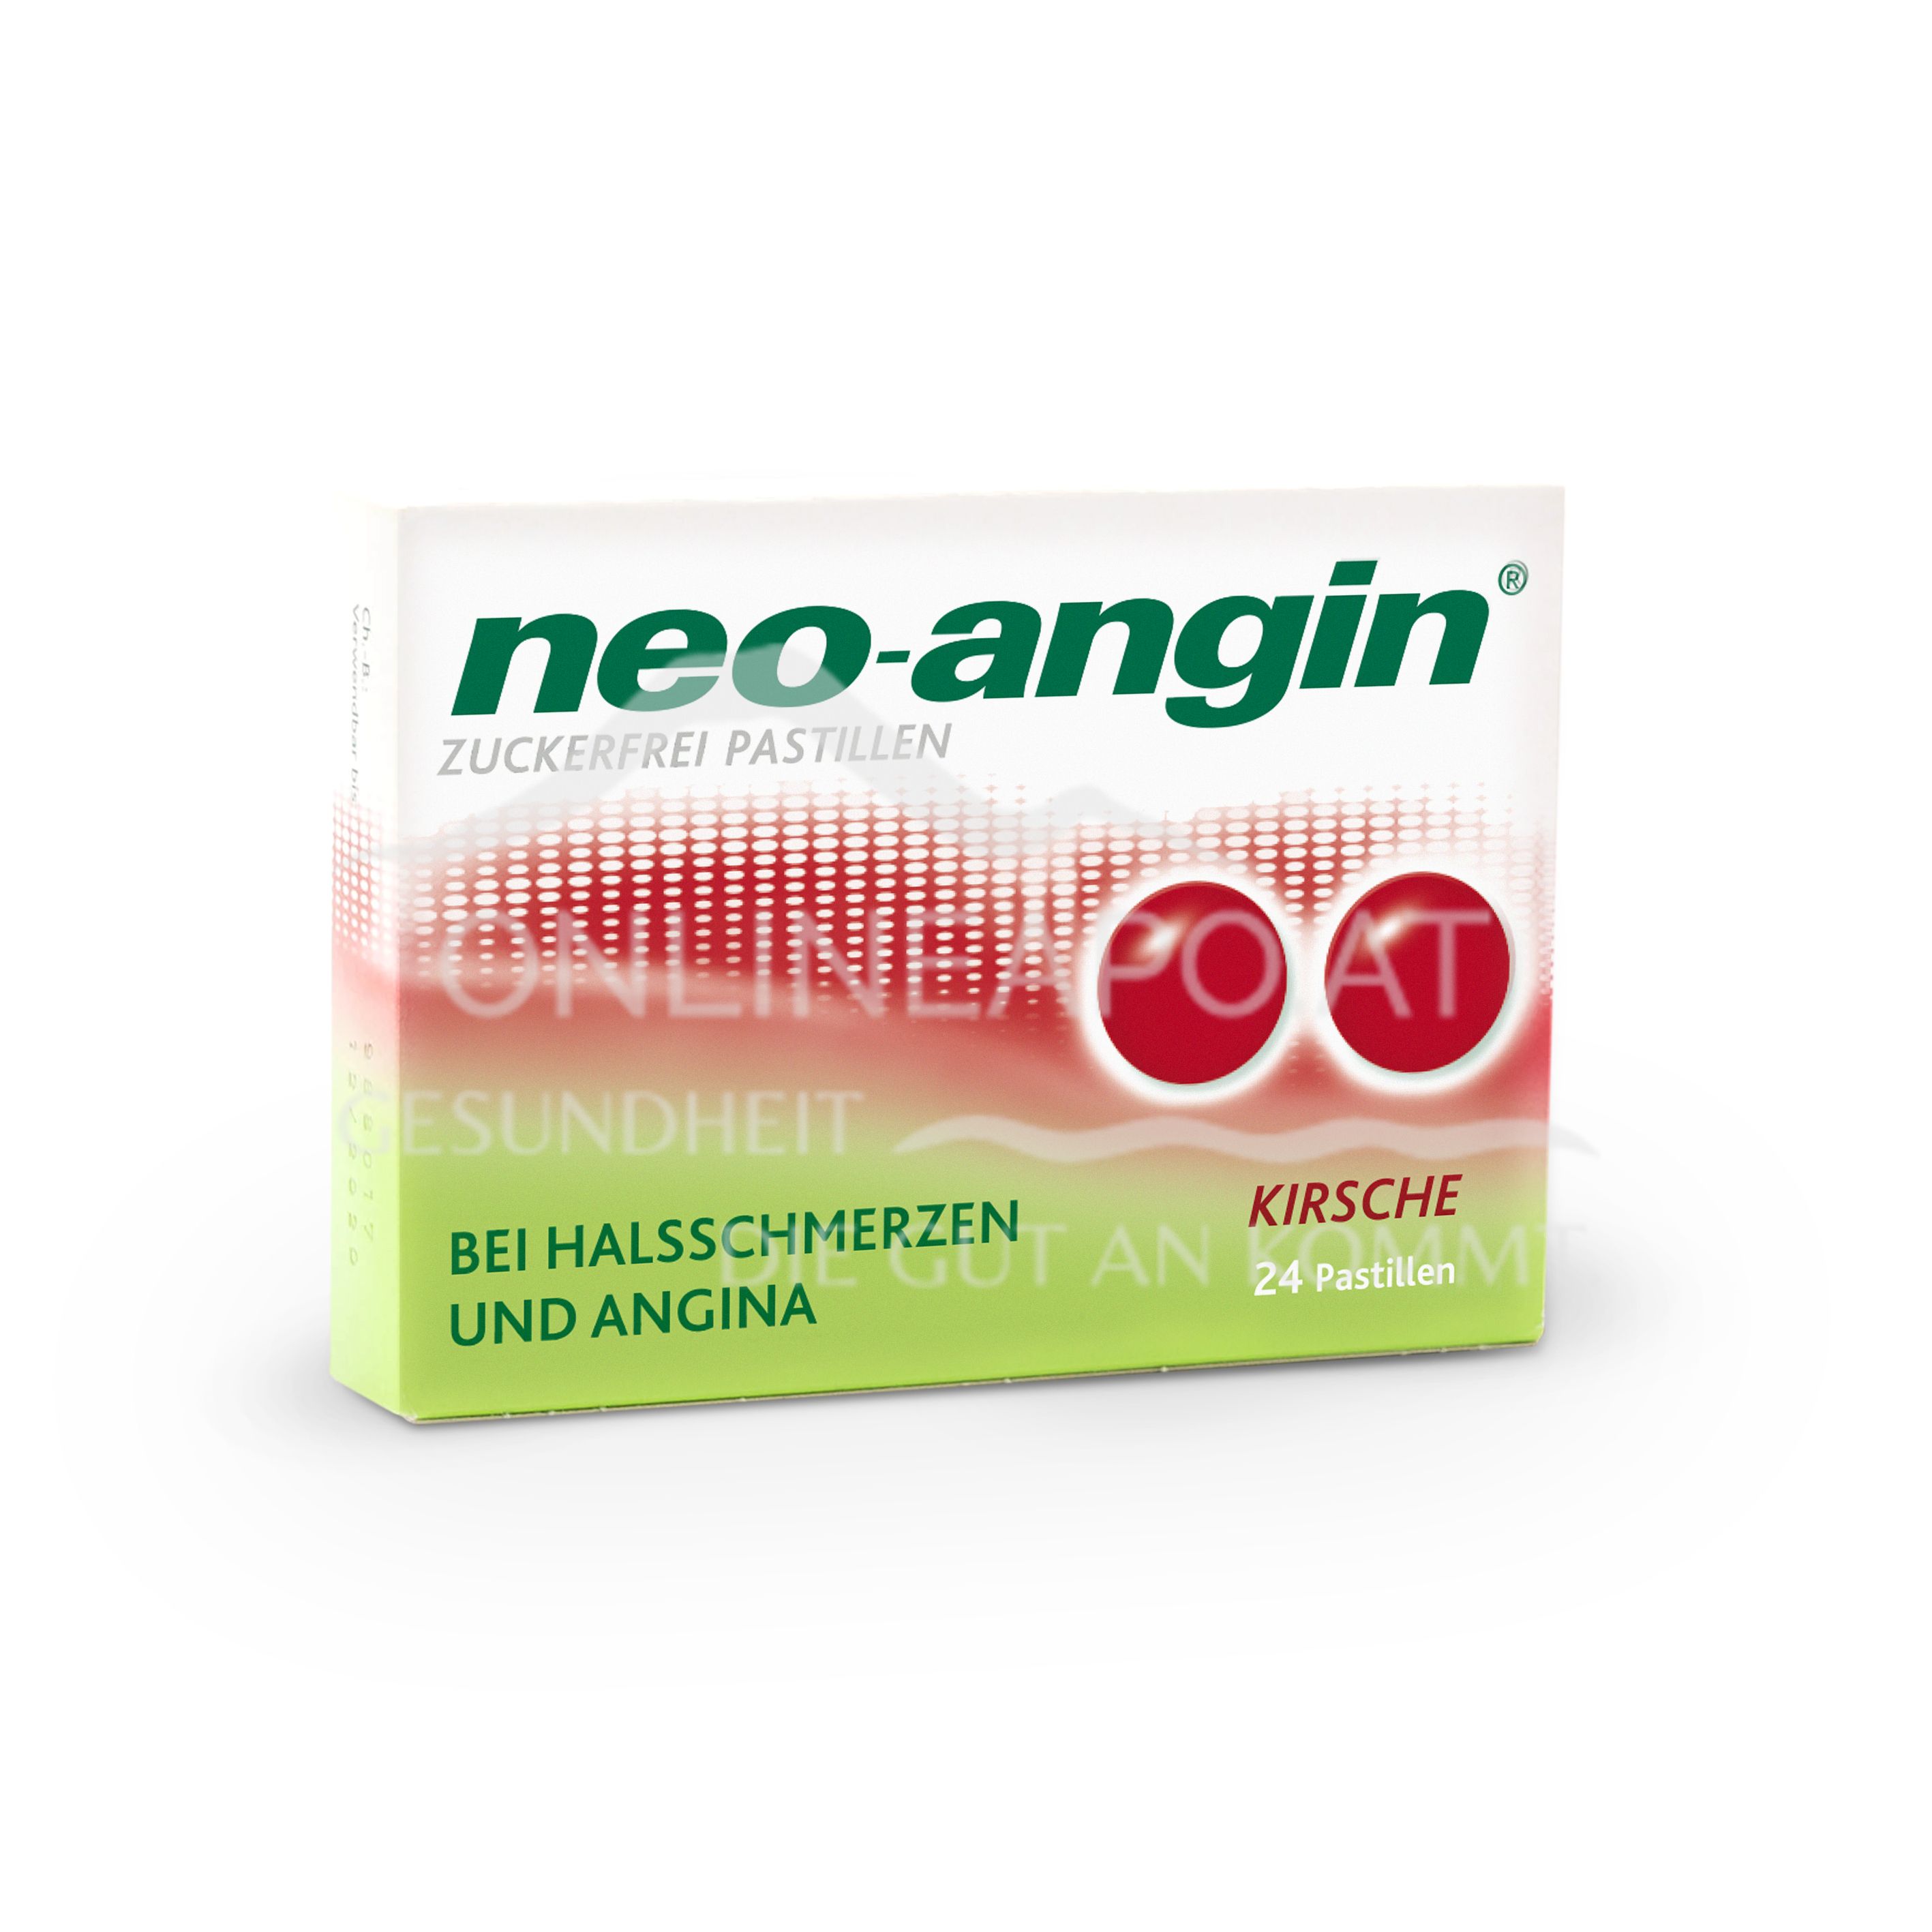 neo-angin® Kirsche zuckerfrei Pastillen